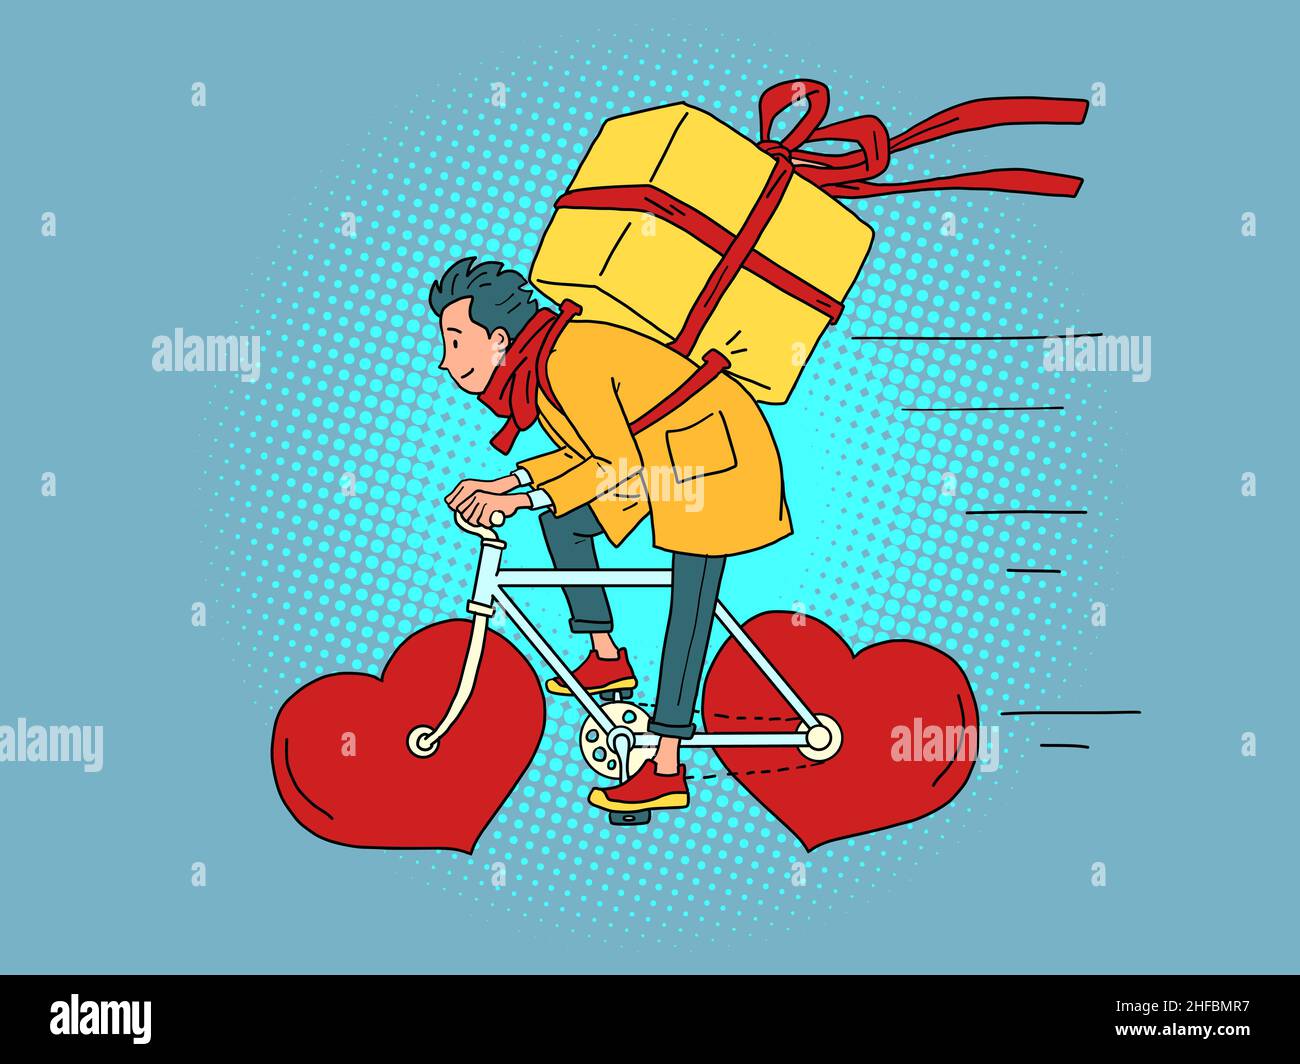 Livraison de nourriture par messagerie sur un vélo à roues, jour de la Saint-Valentin.Cœur rouge au lieu des roues Illustration de Vecteur